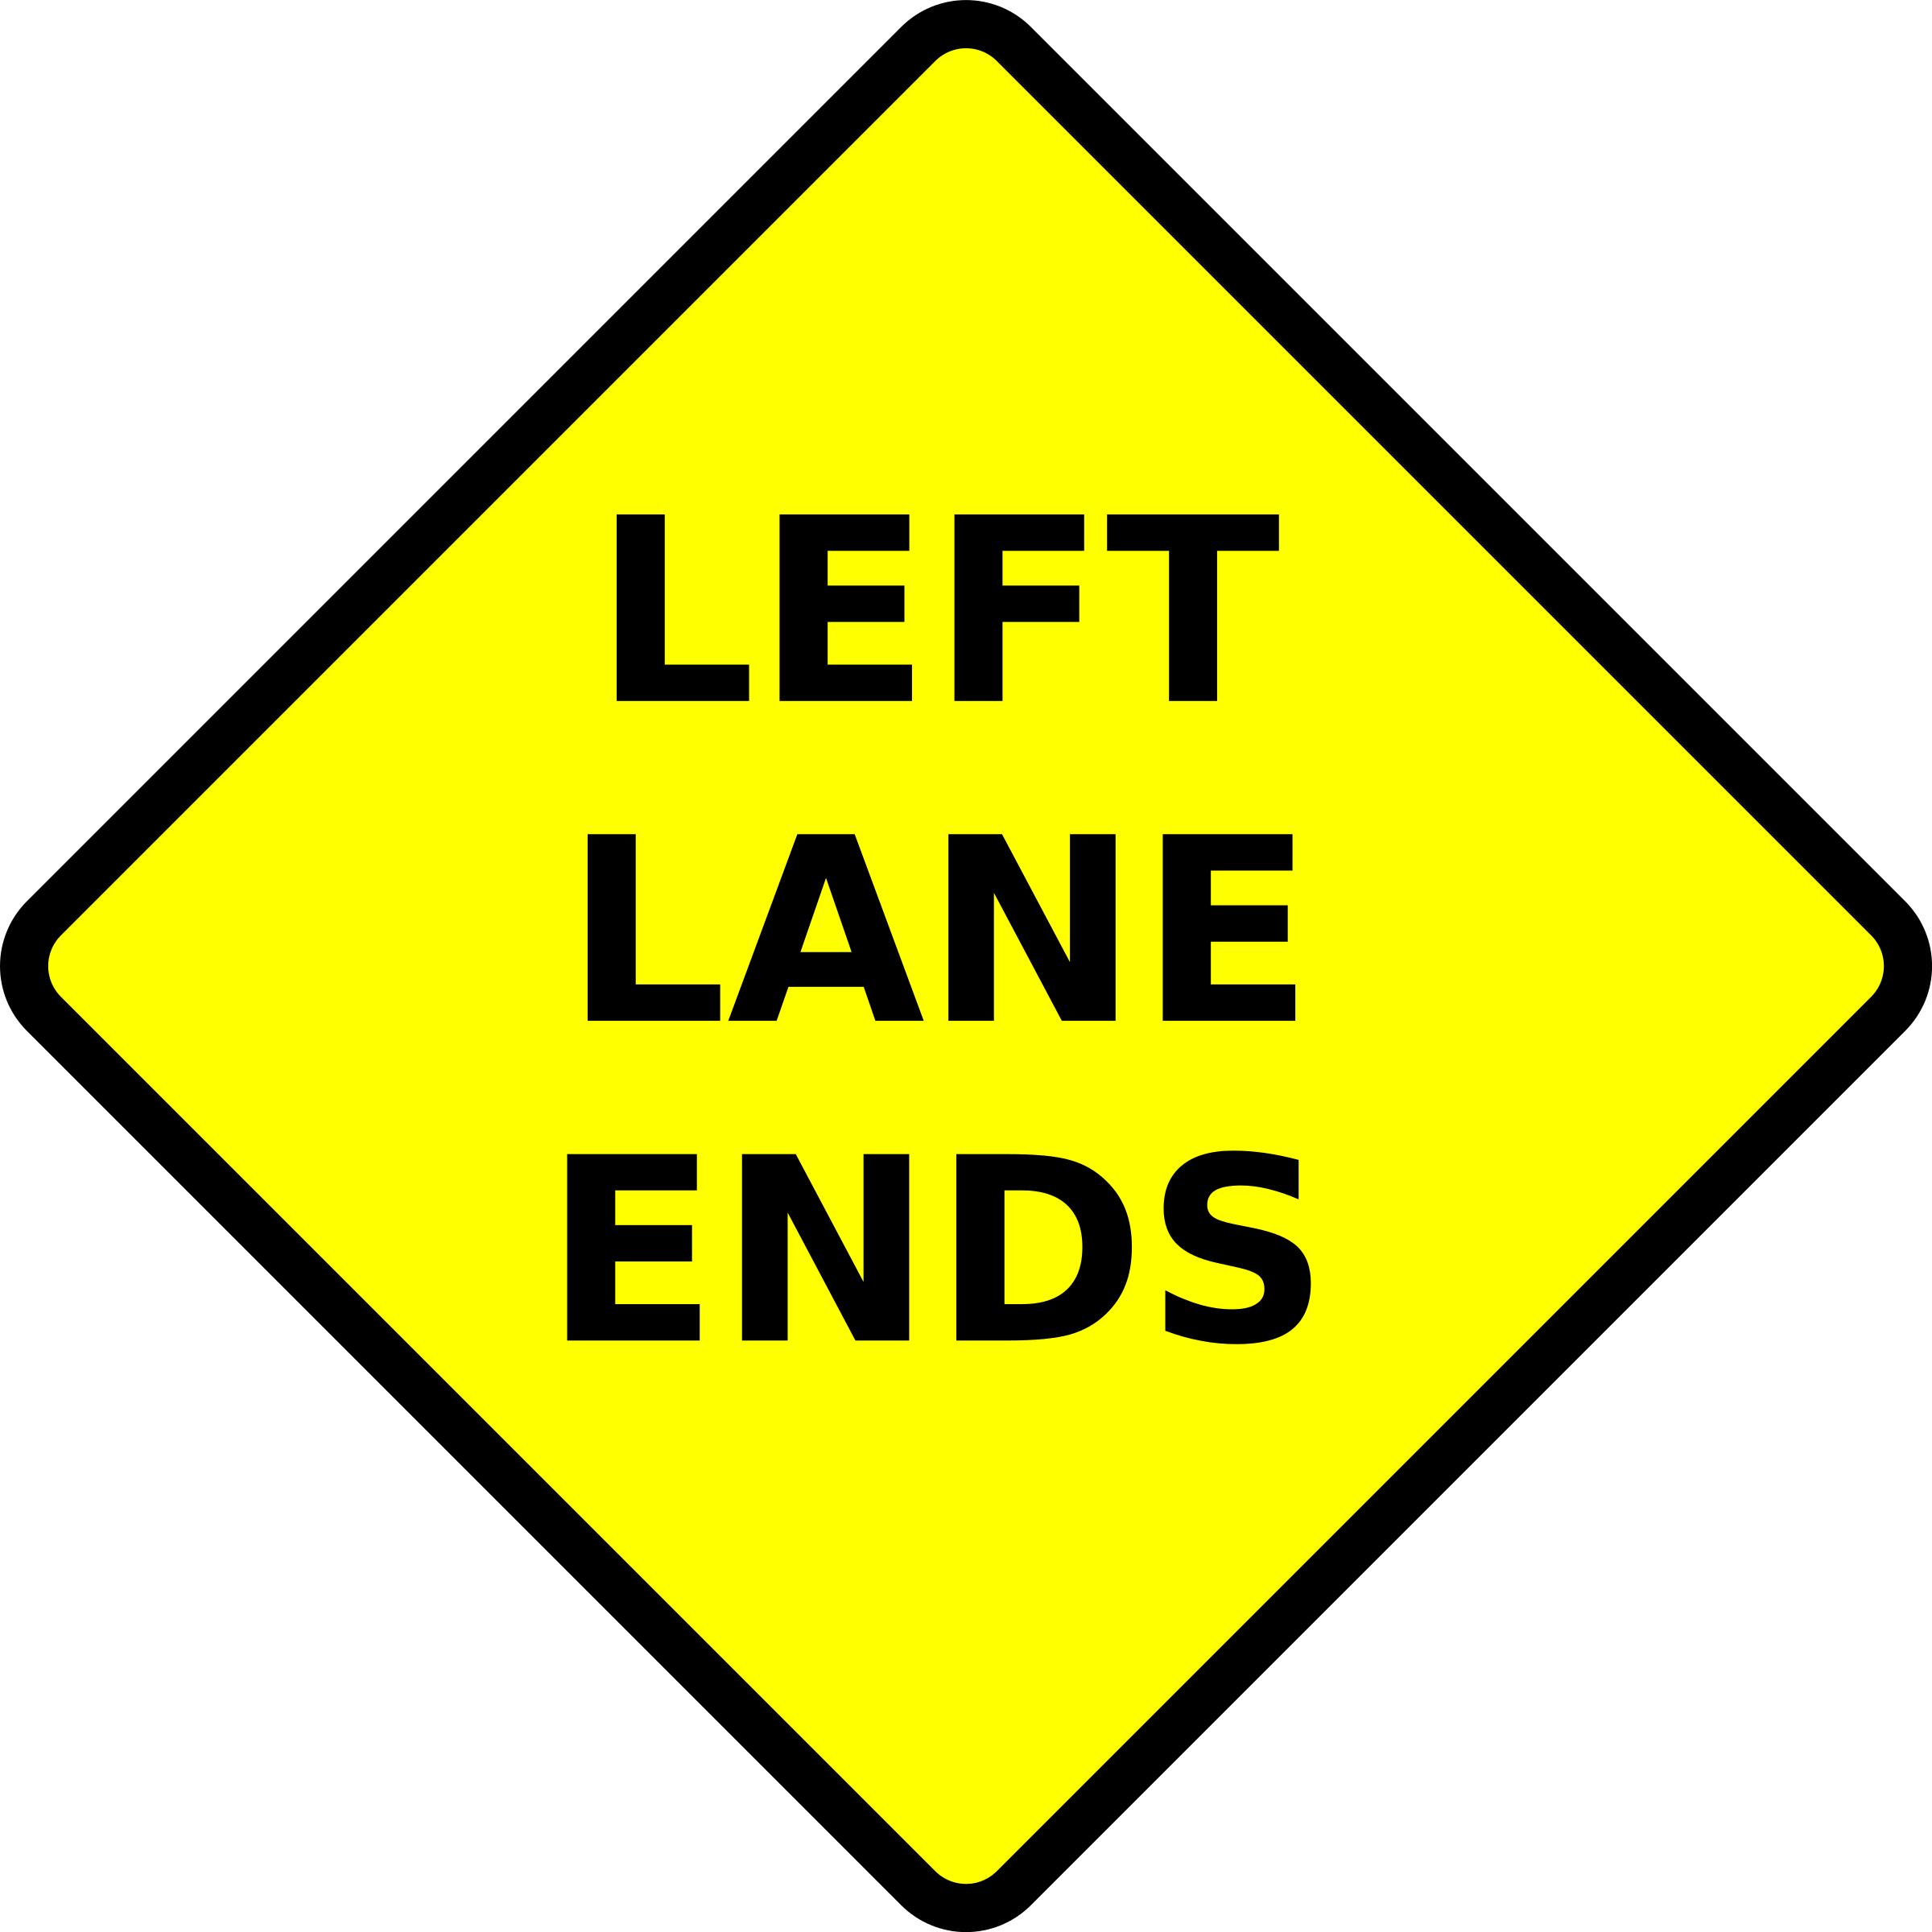 caution-lane ends-left png